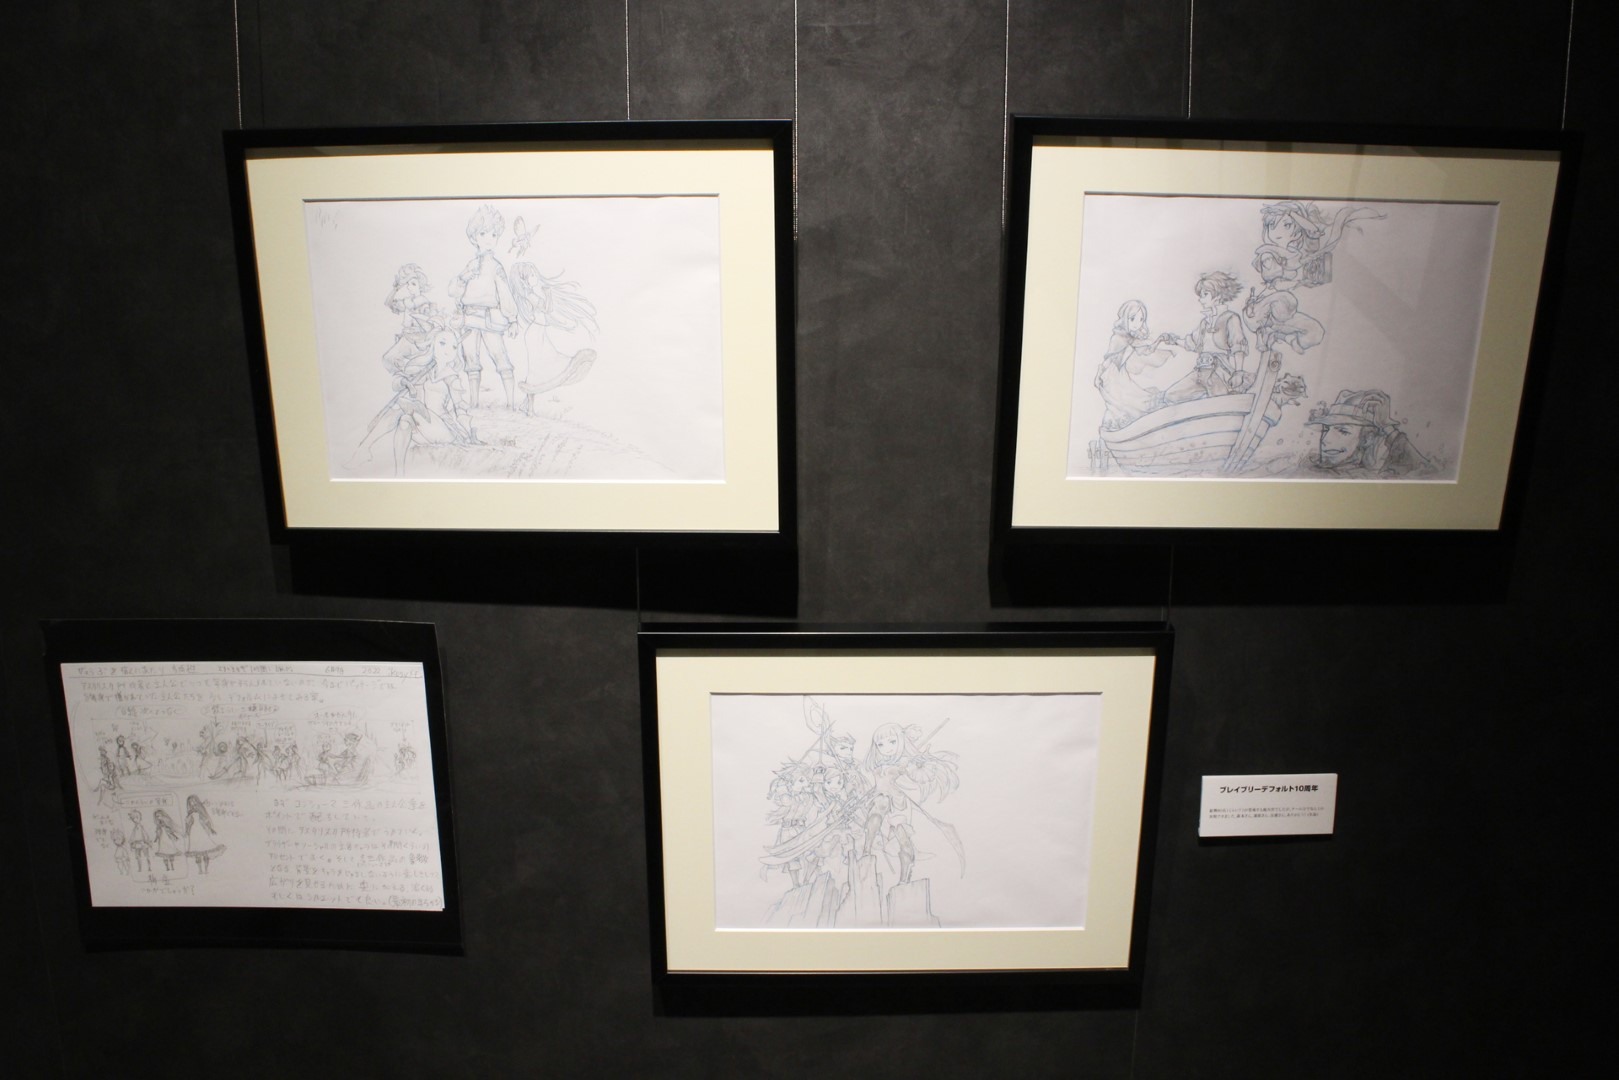 日本《Bravely Default》10 周年记念展现场报导展示超过两百张以上插图原画插图44